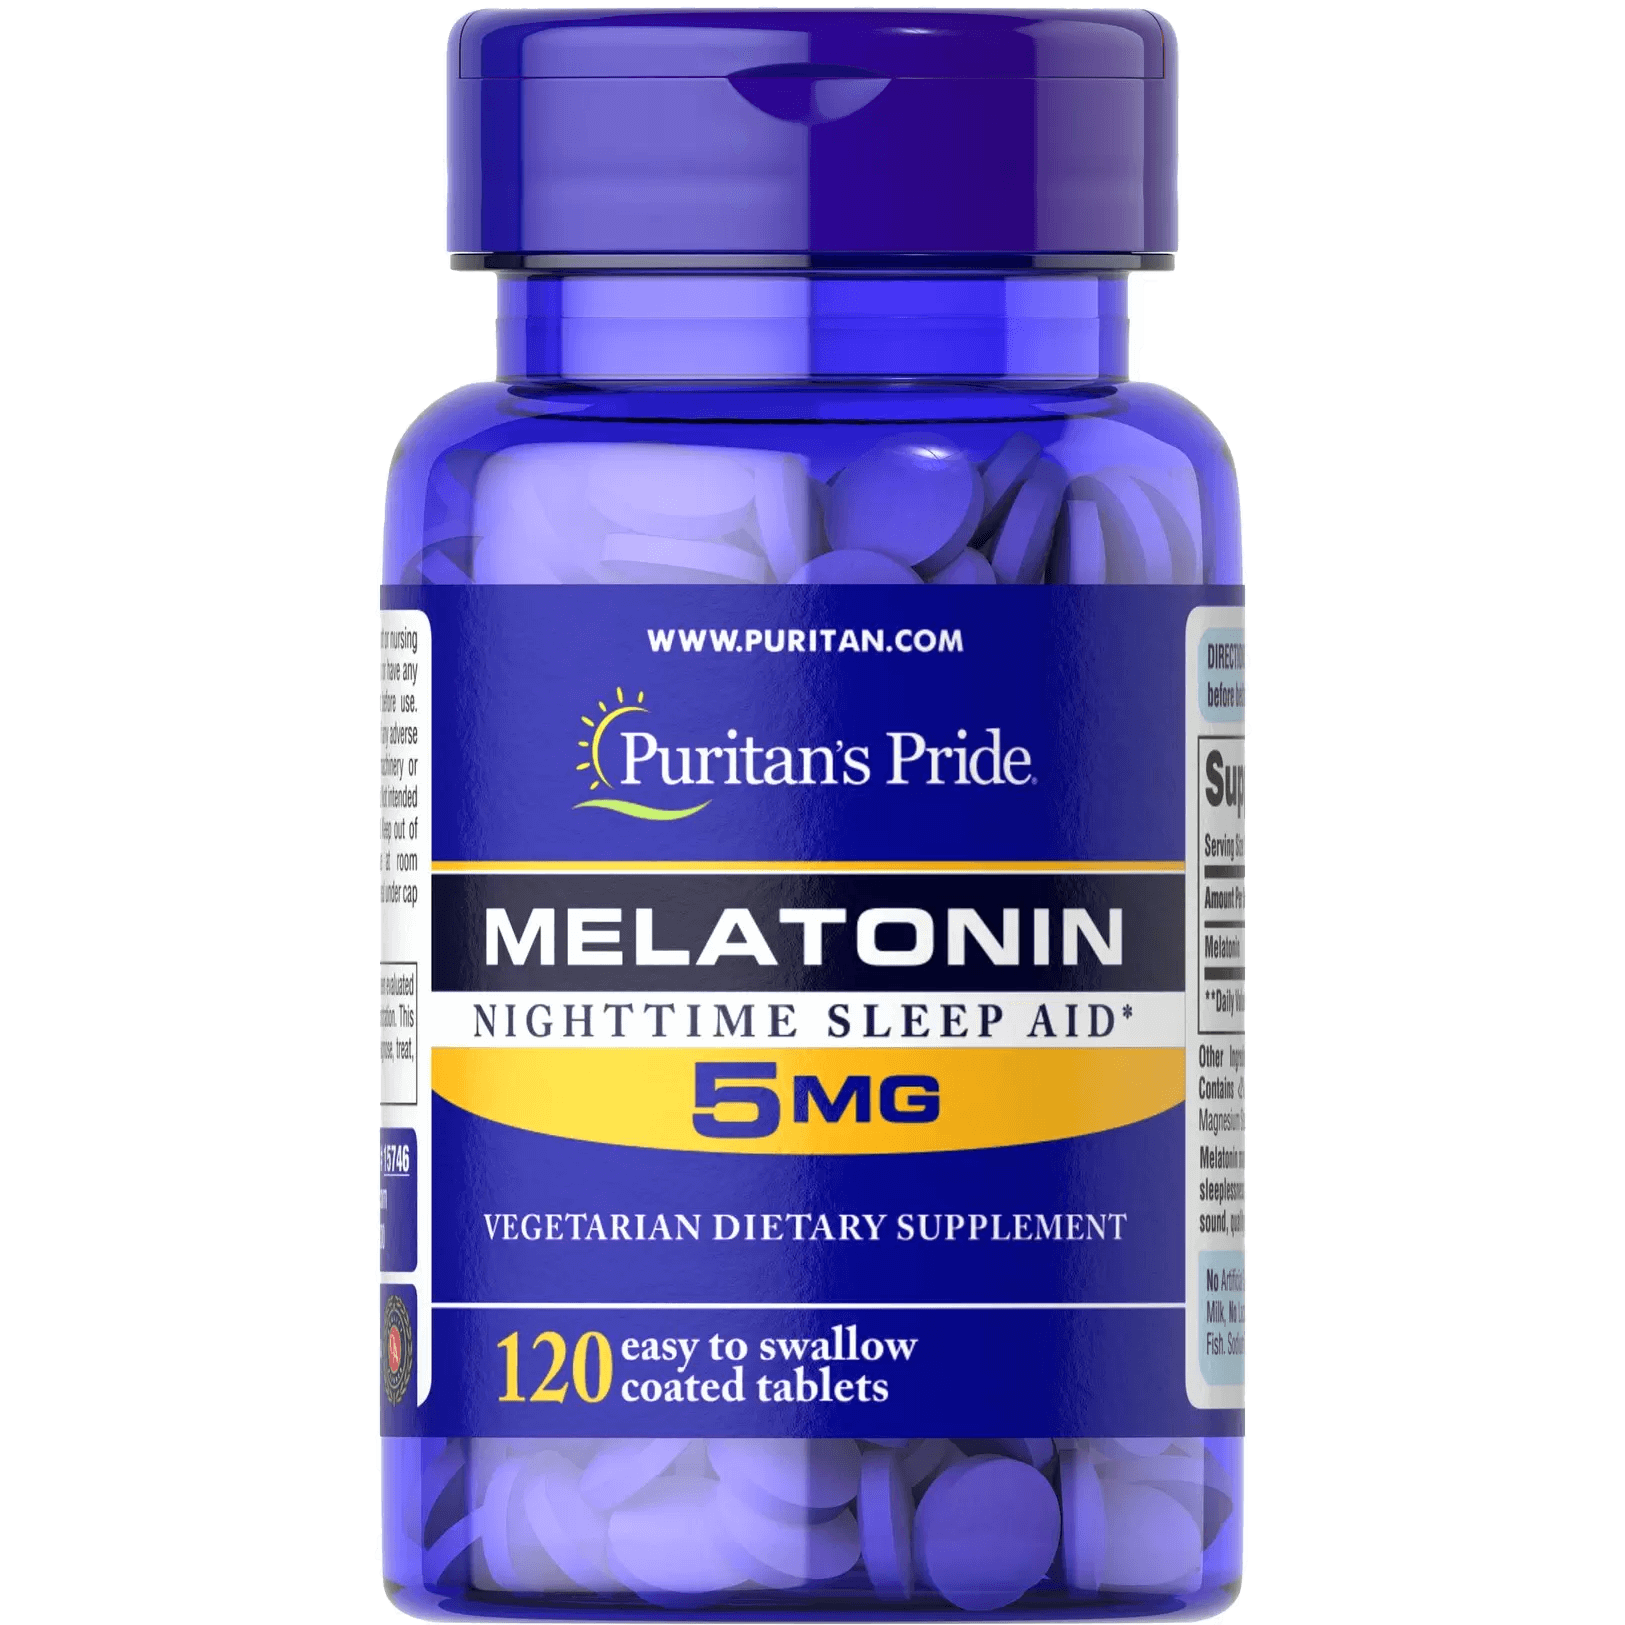 Melatonin 10 mg,  мл, Puritan's Pride. Мелатонин. Улучшение сна Восстановление Укрепление иммунитета Поддержание здоровья 